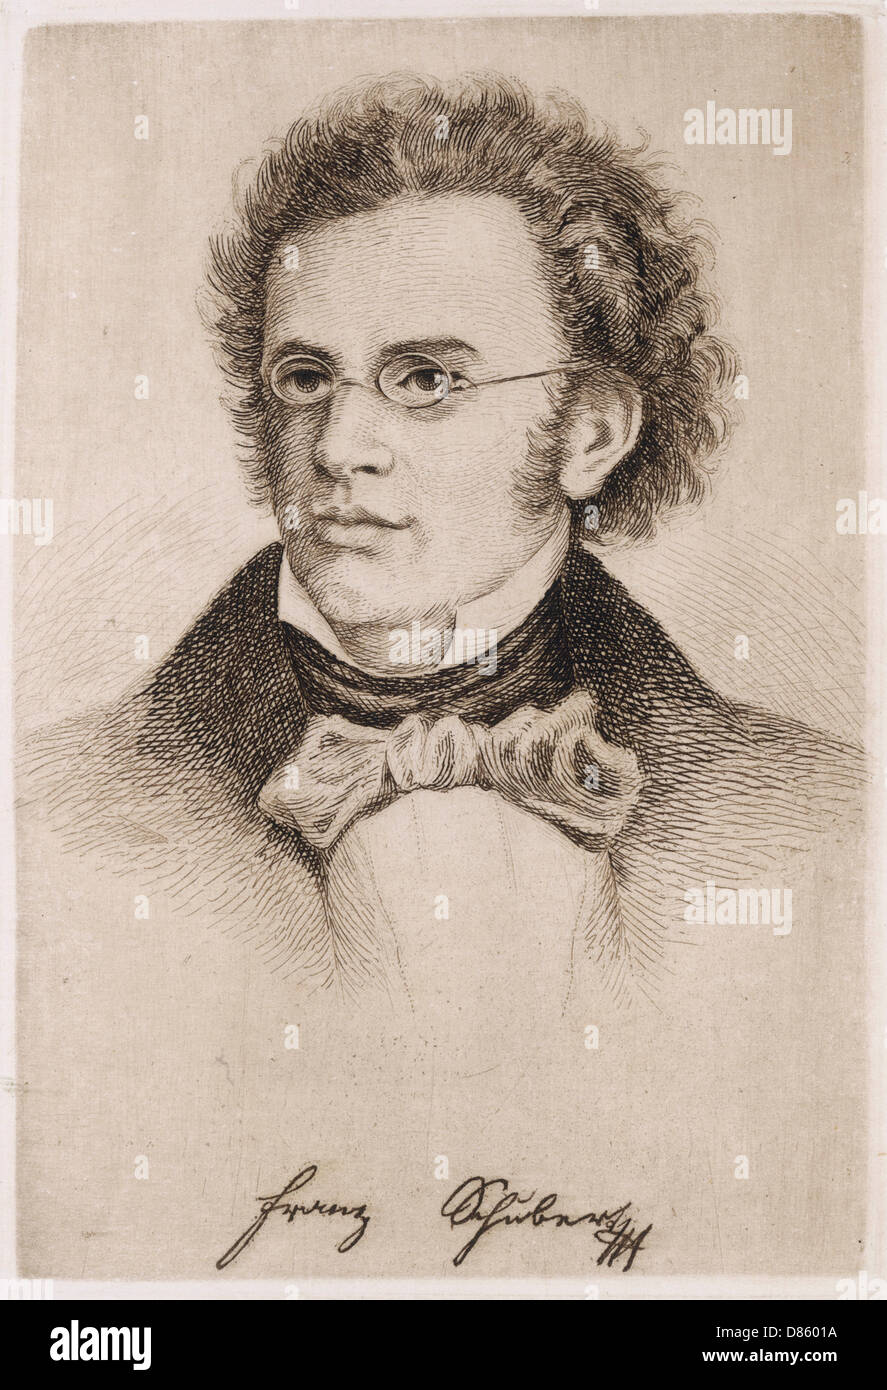 Franz Schubert Stock Photo